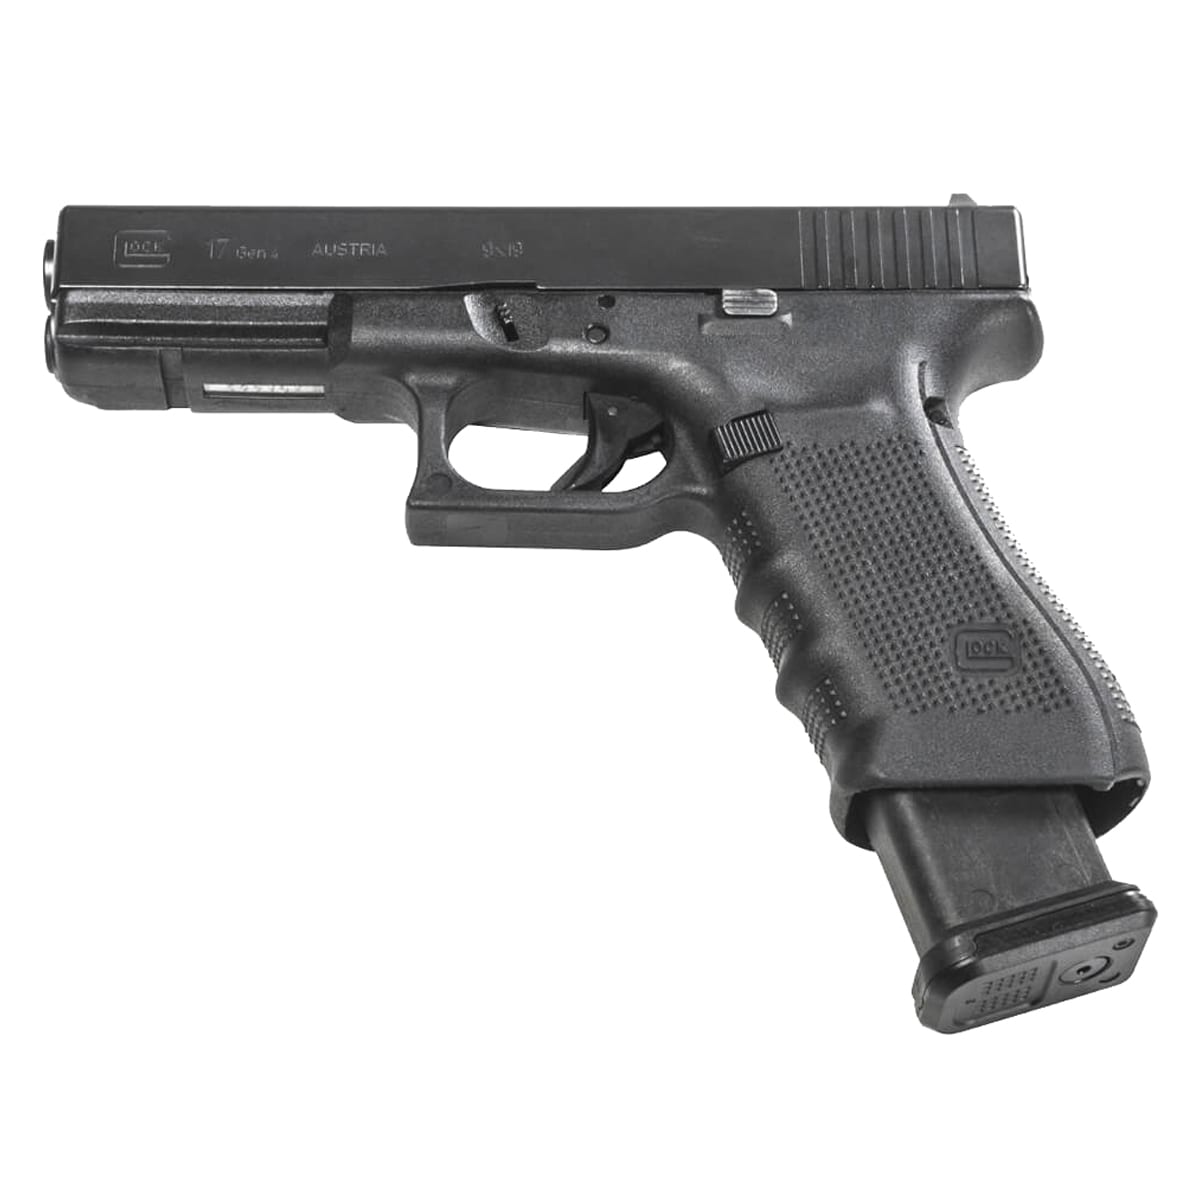 Магазин на 21 патрон Magpul PMAG 21 GL9 кал. 9x19 мм для пістолетів Glock - Black